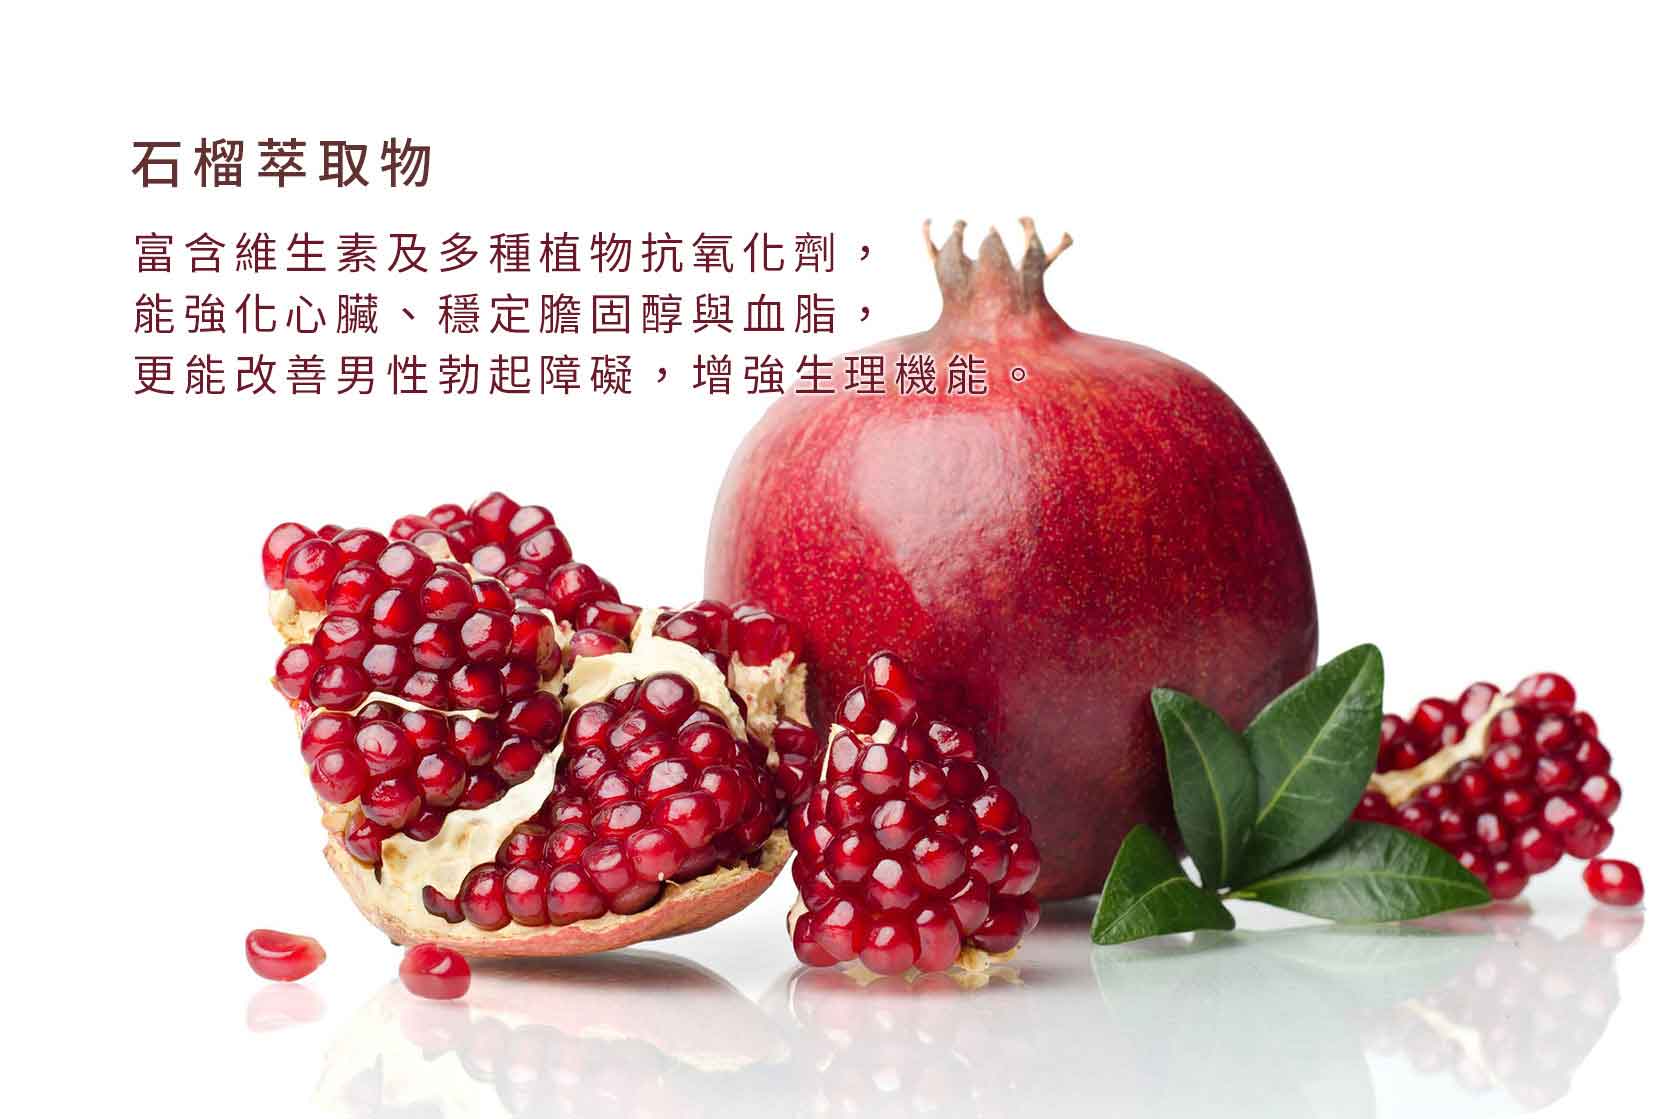 『讚恩』九種萃取物-石榴萃取物(Pomegranate Extract)